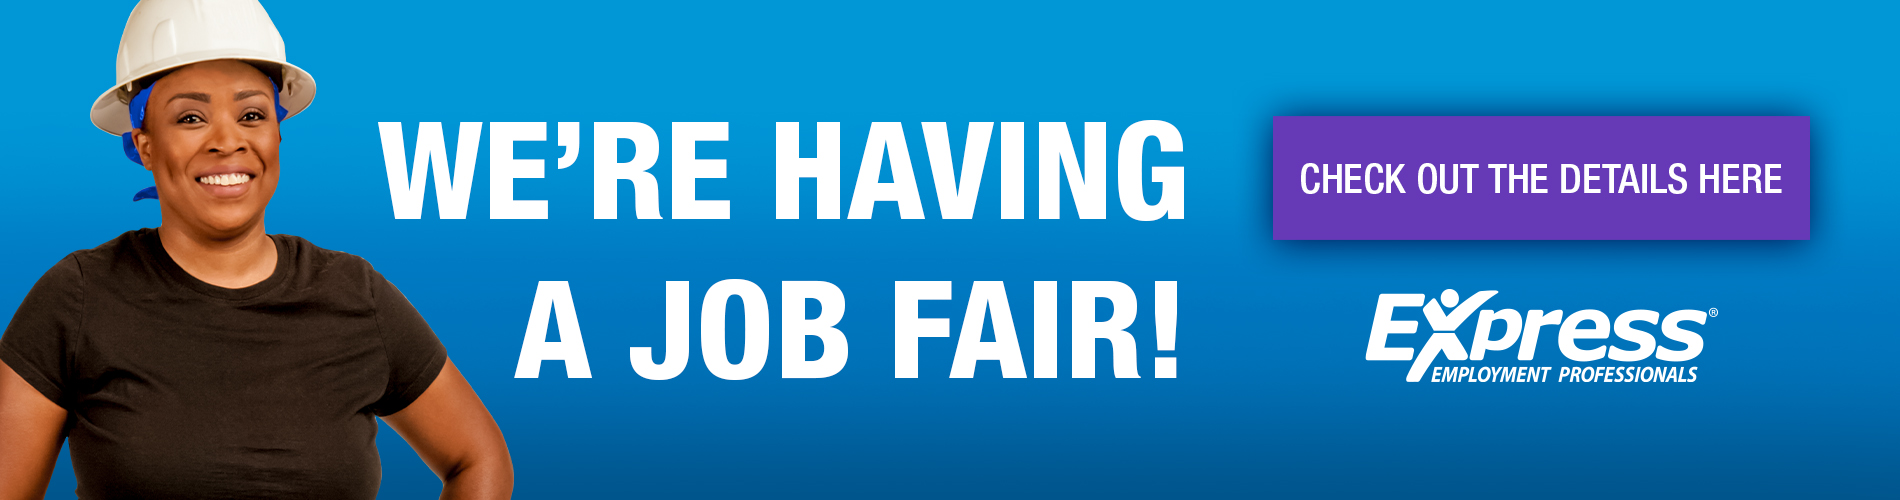 Job Fair Website Banner